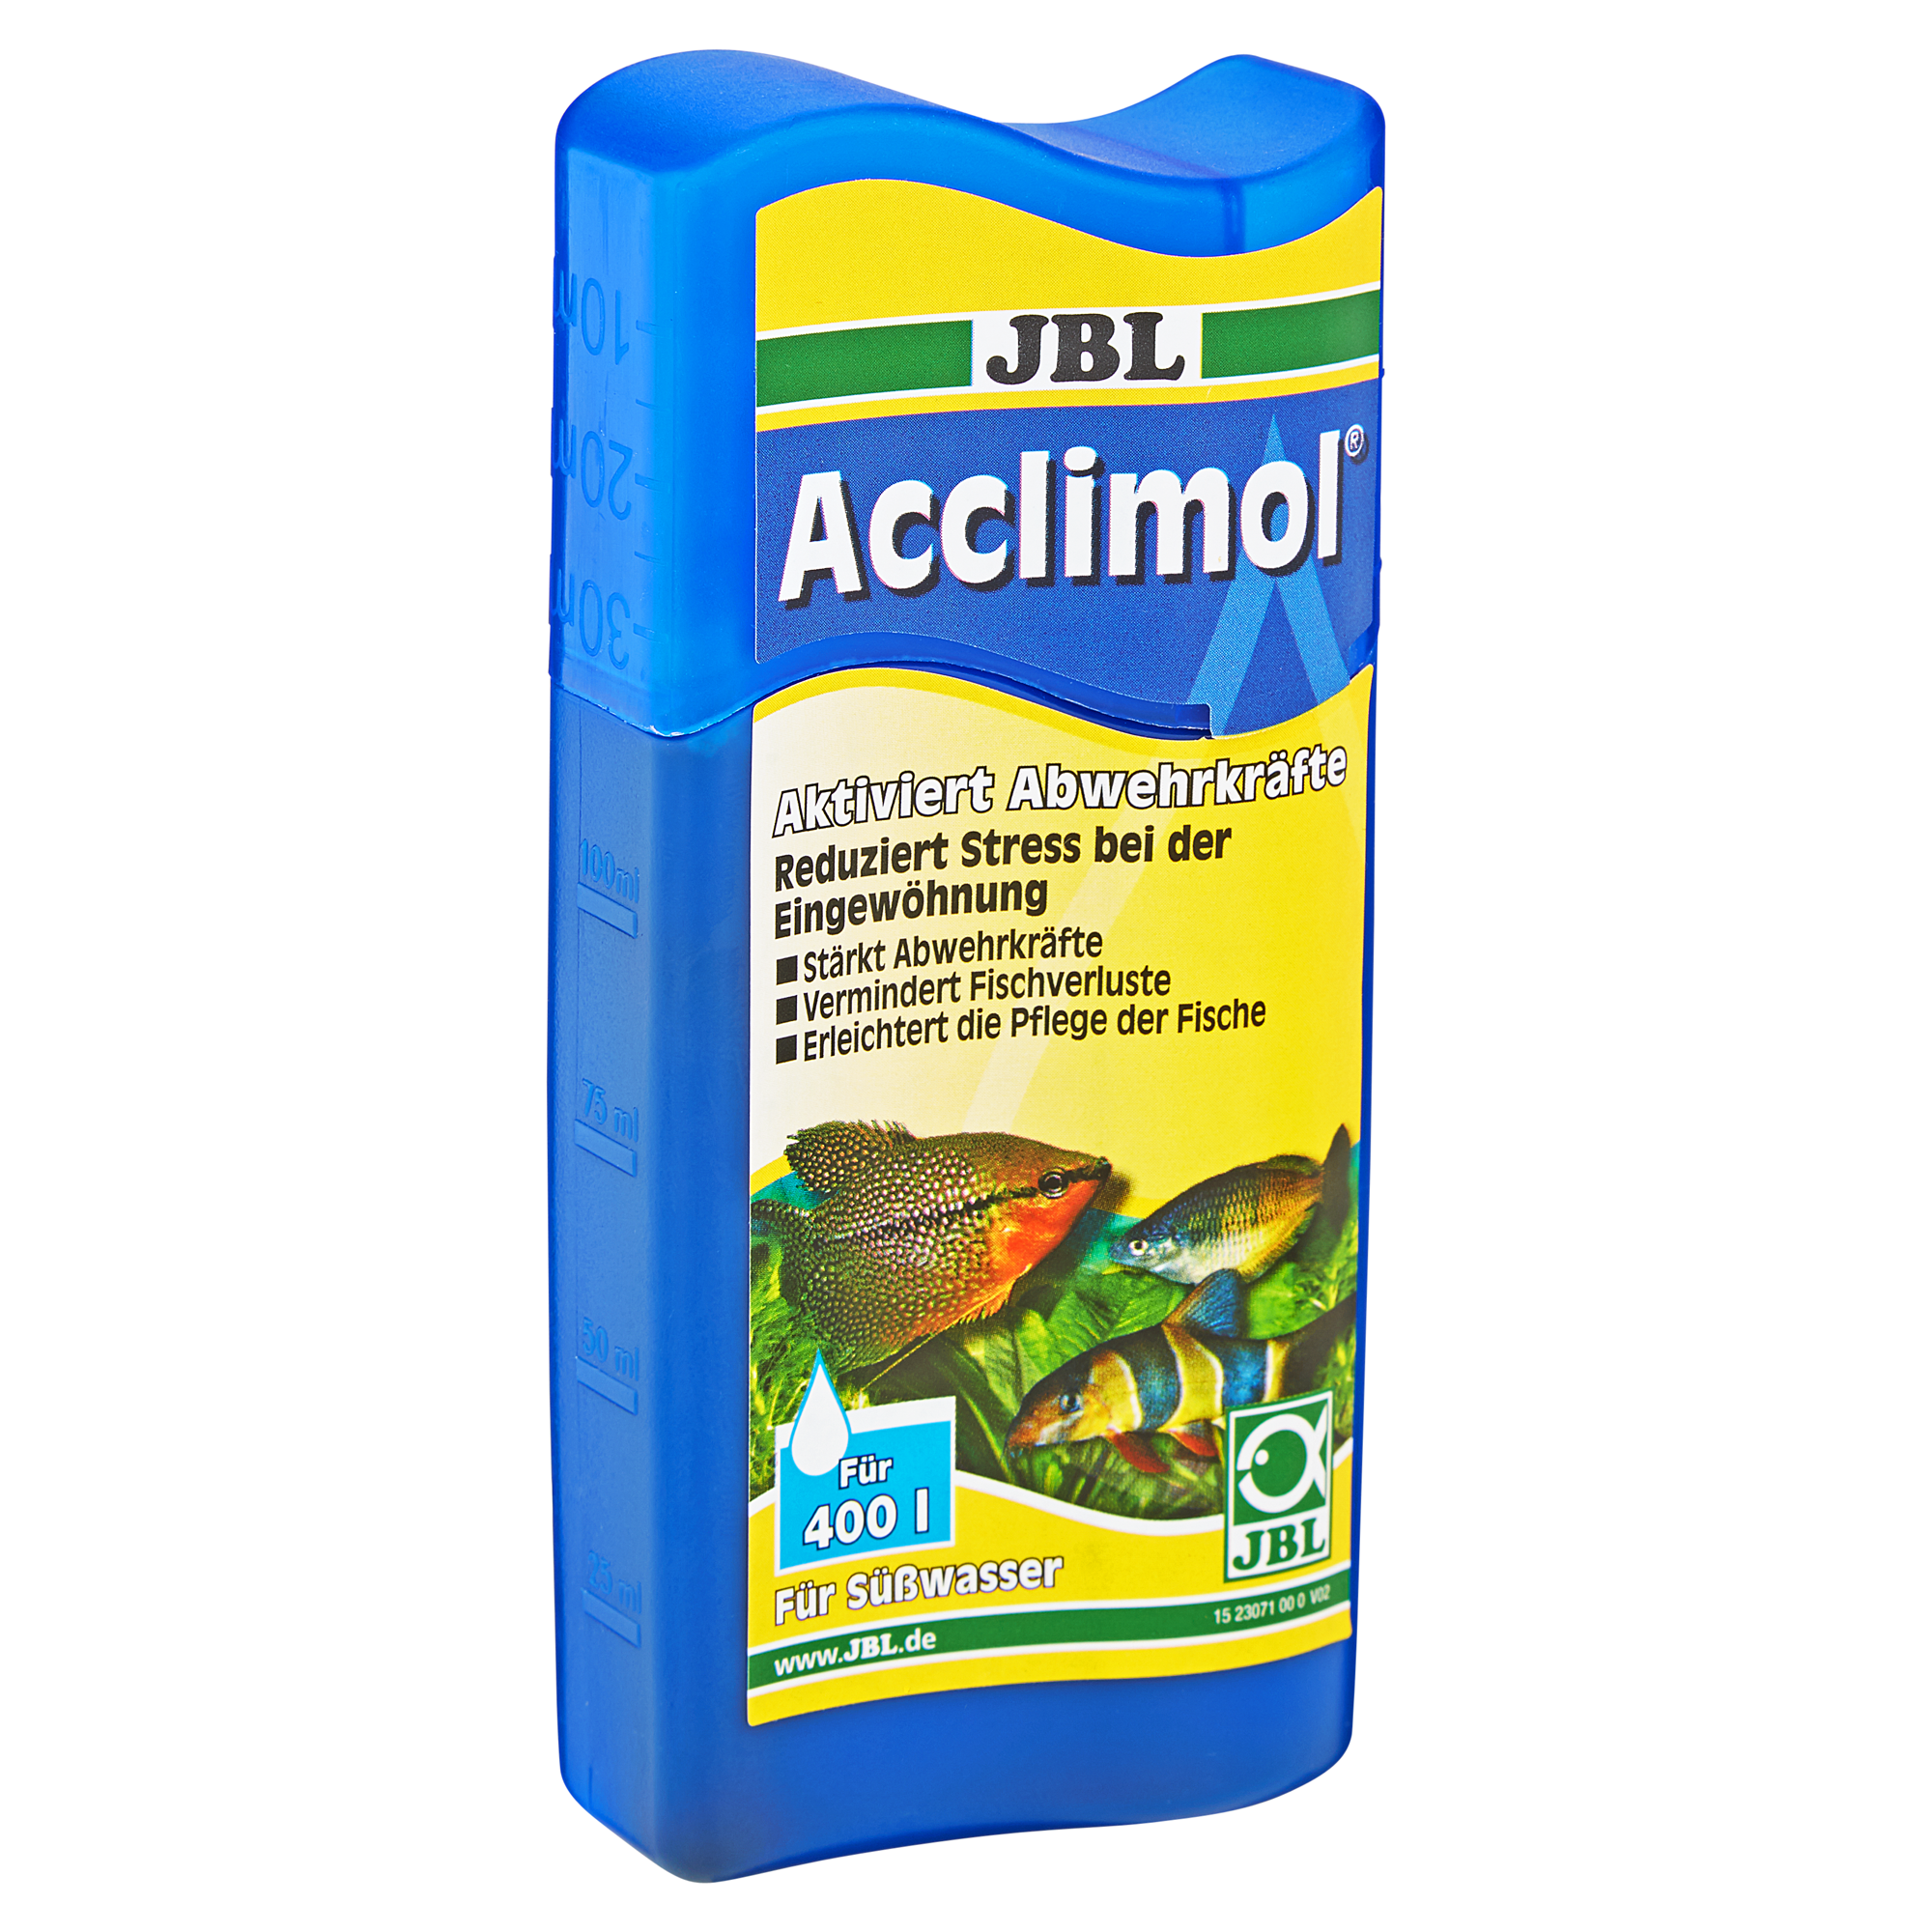 Wasseraufbereiter "Acclimol" 100 ml + product picture